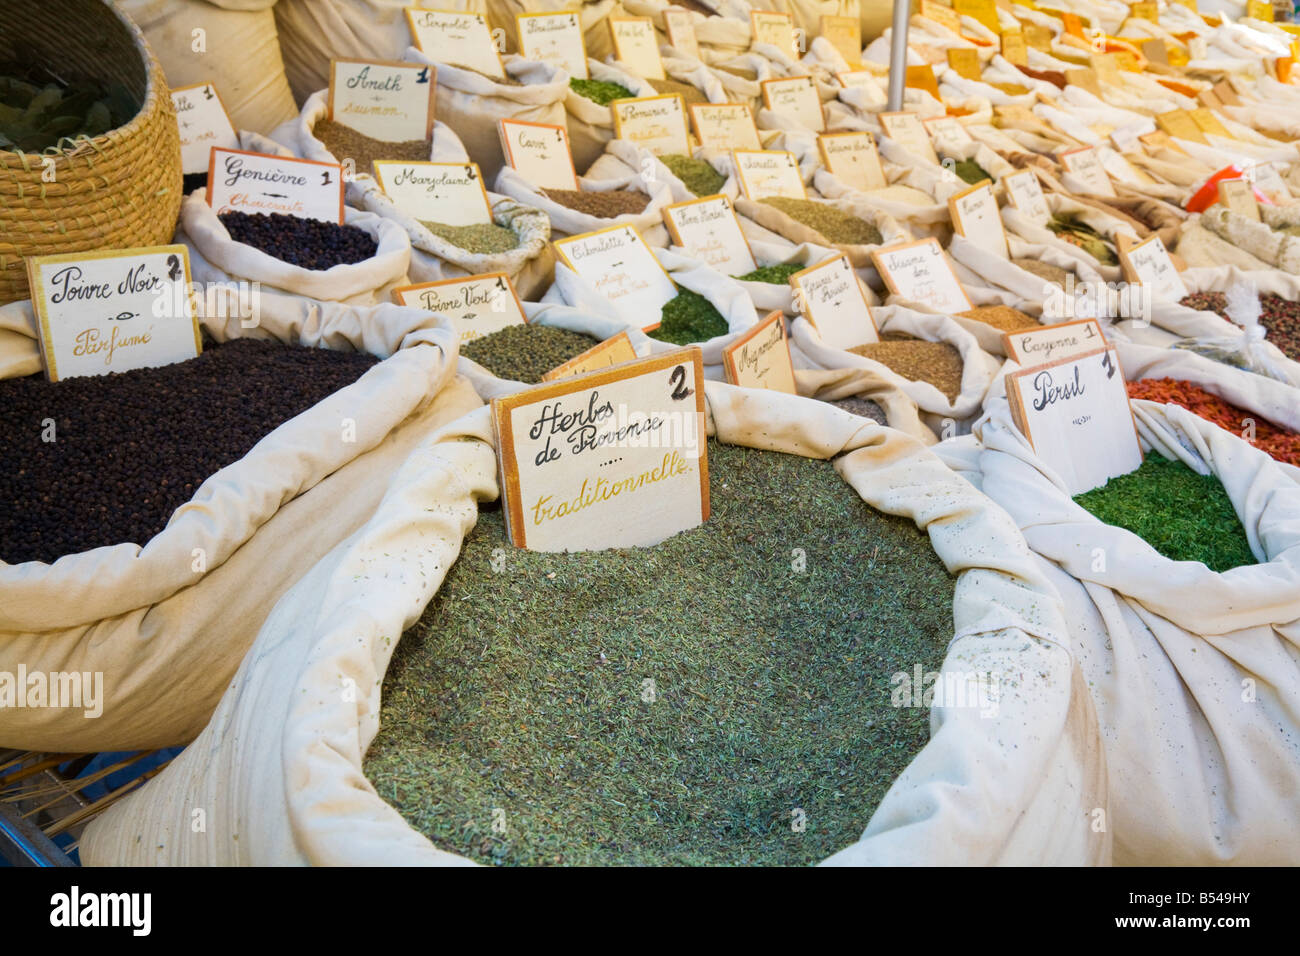 Eine Vielzahl von Kräutern und Gewürzen (provenzalische Kräuter im Vordergrund) wird an einen Bauernmarkt in der Provence angeboten Stockfoto